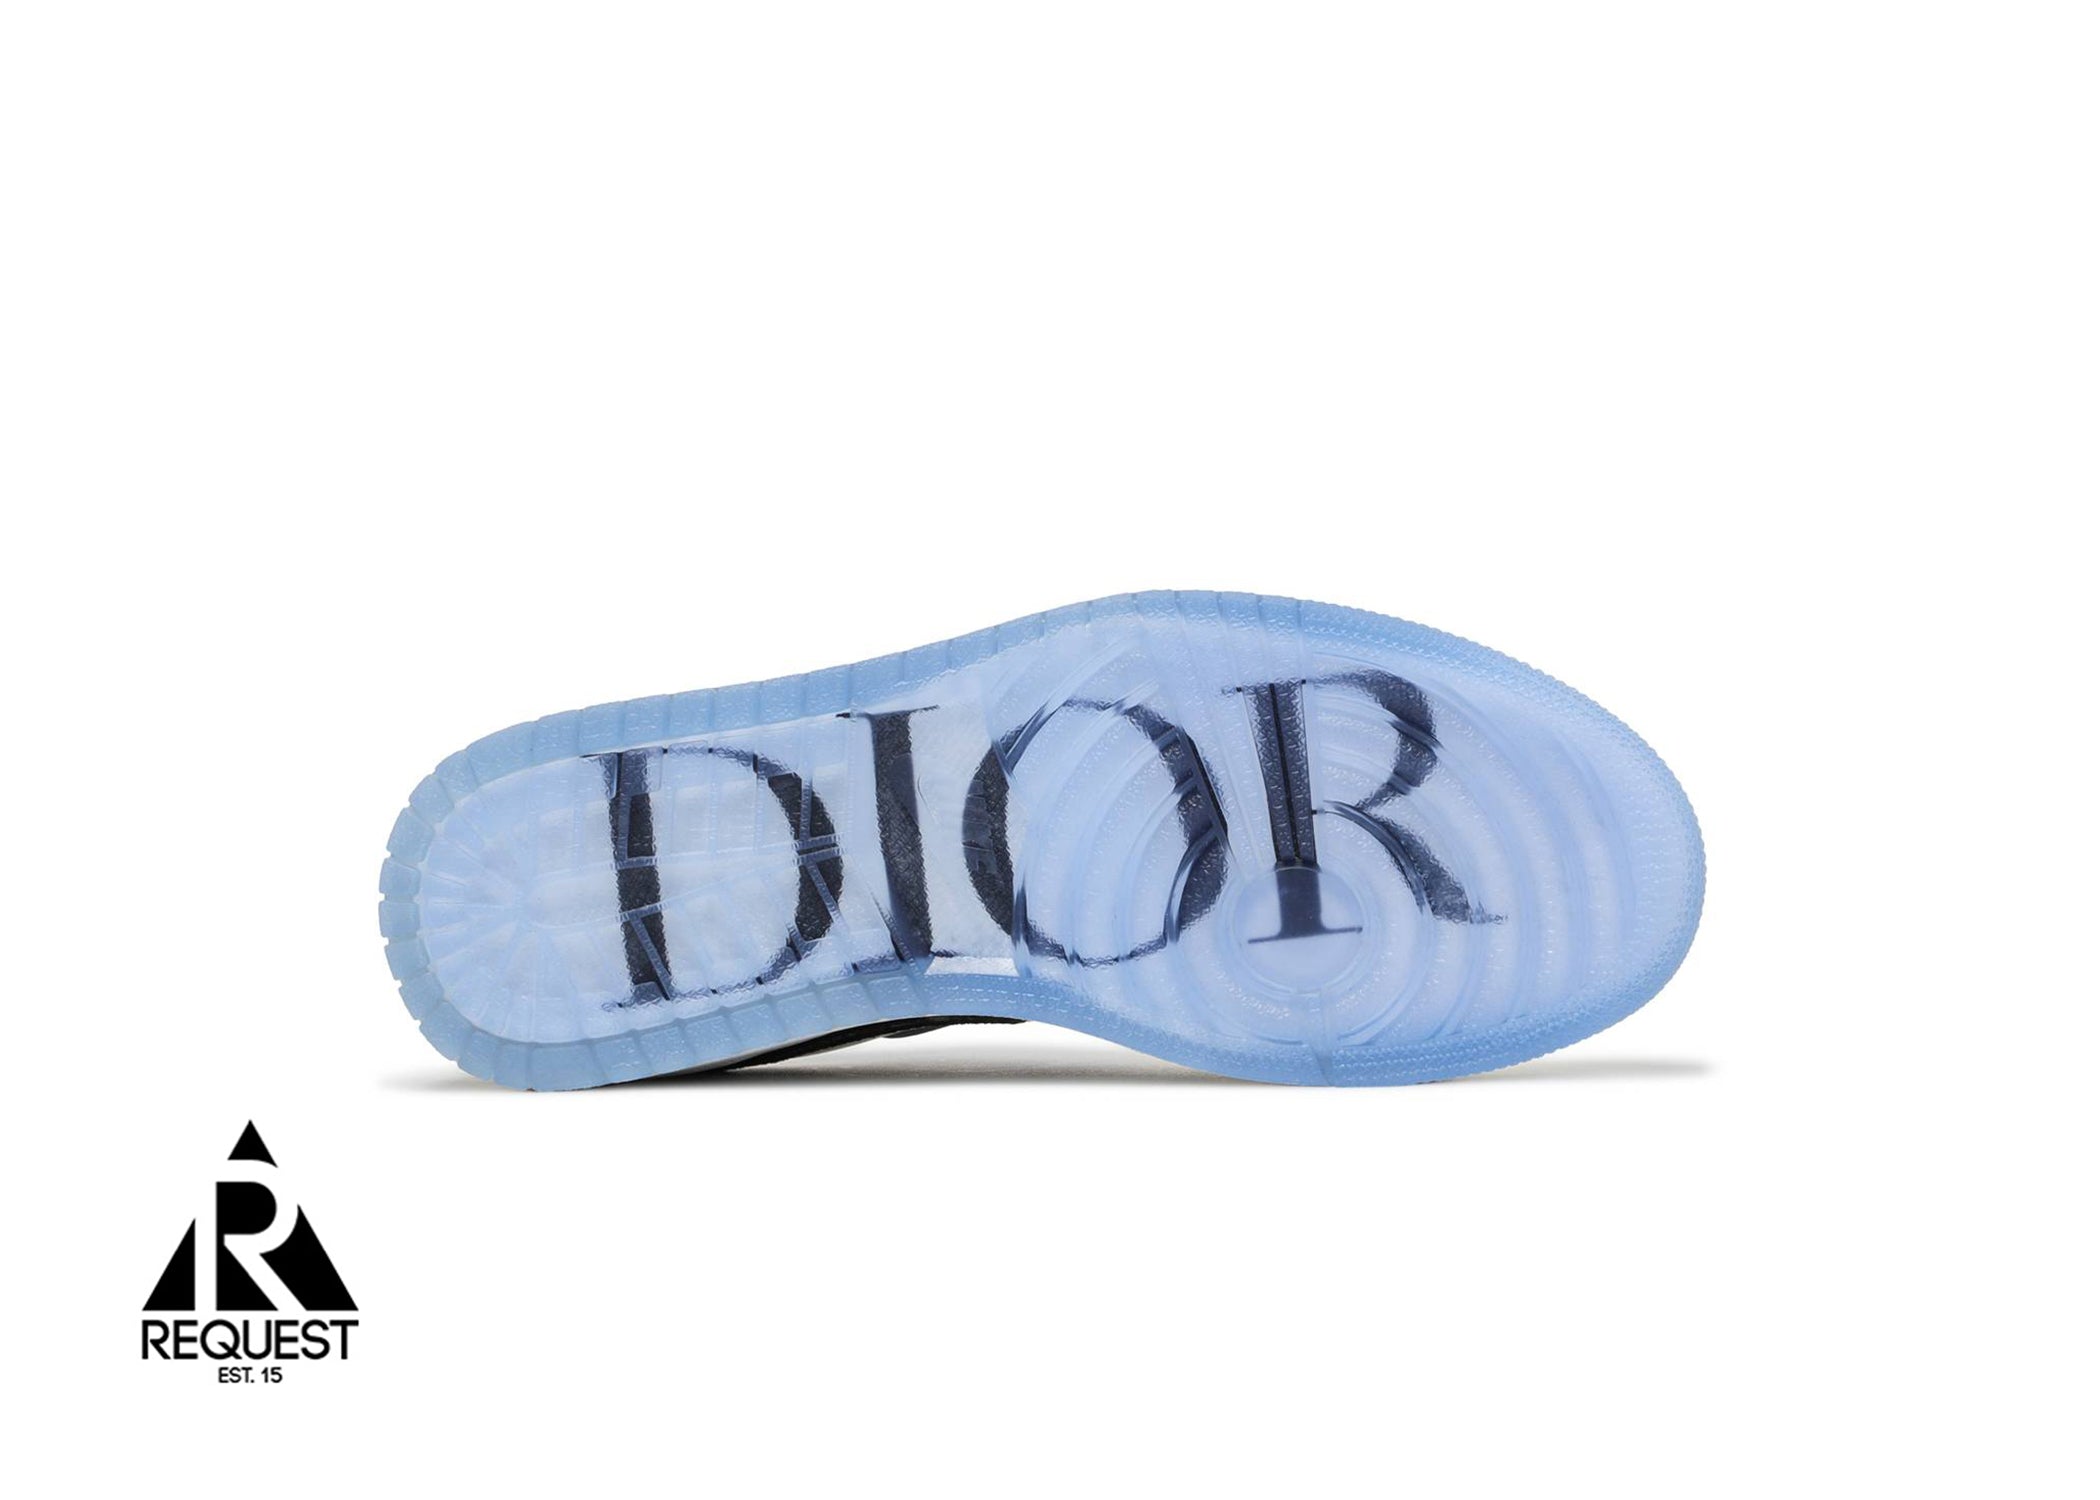 Air Jordan 1 Retro Low “Dior”